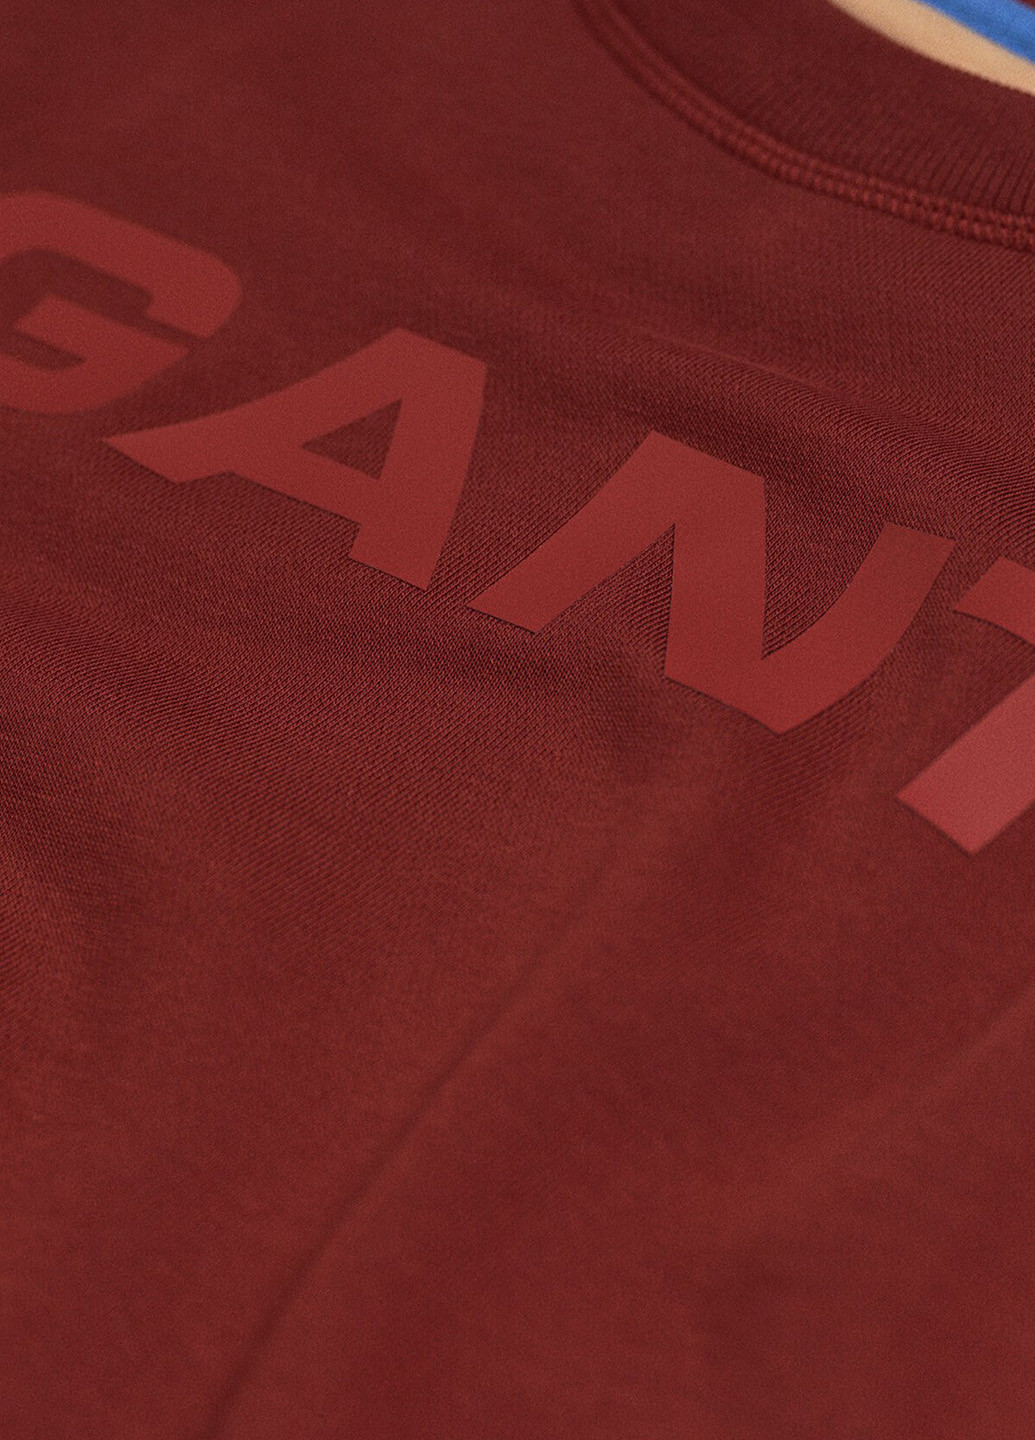 Gant свитшот надпись бордовый кэжуал трикотаж, хлопок